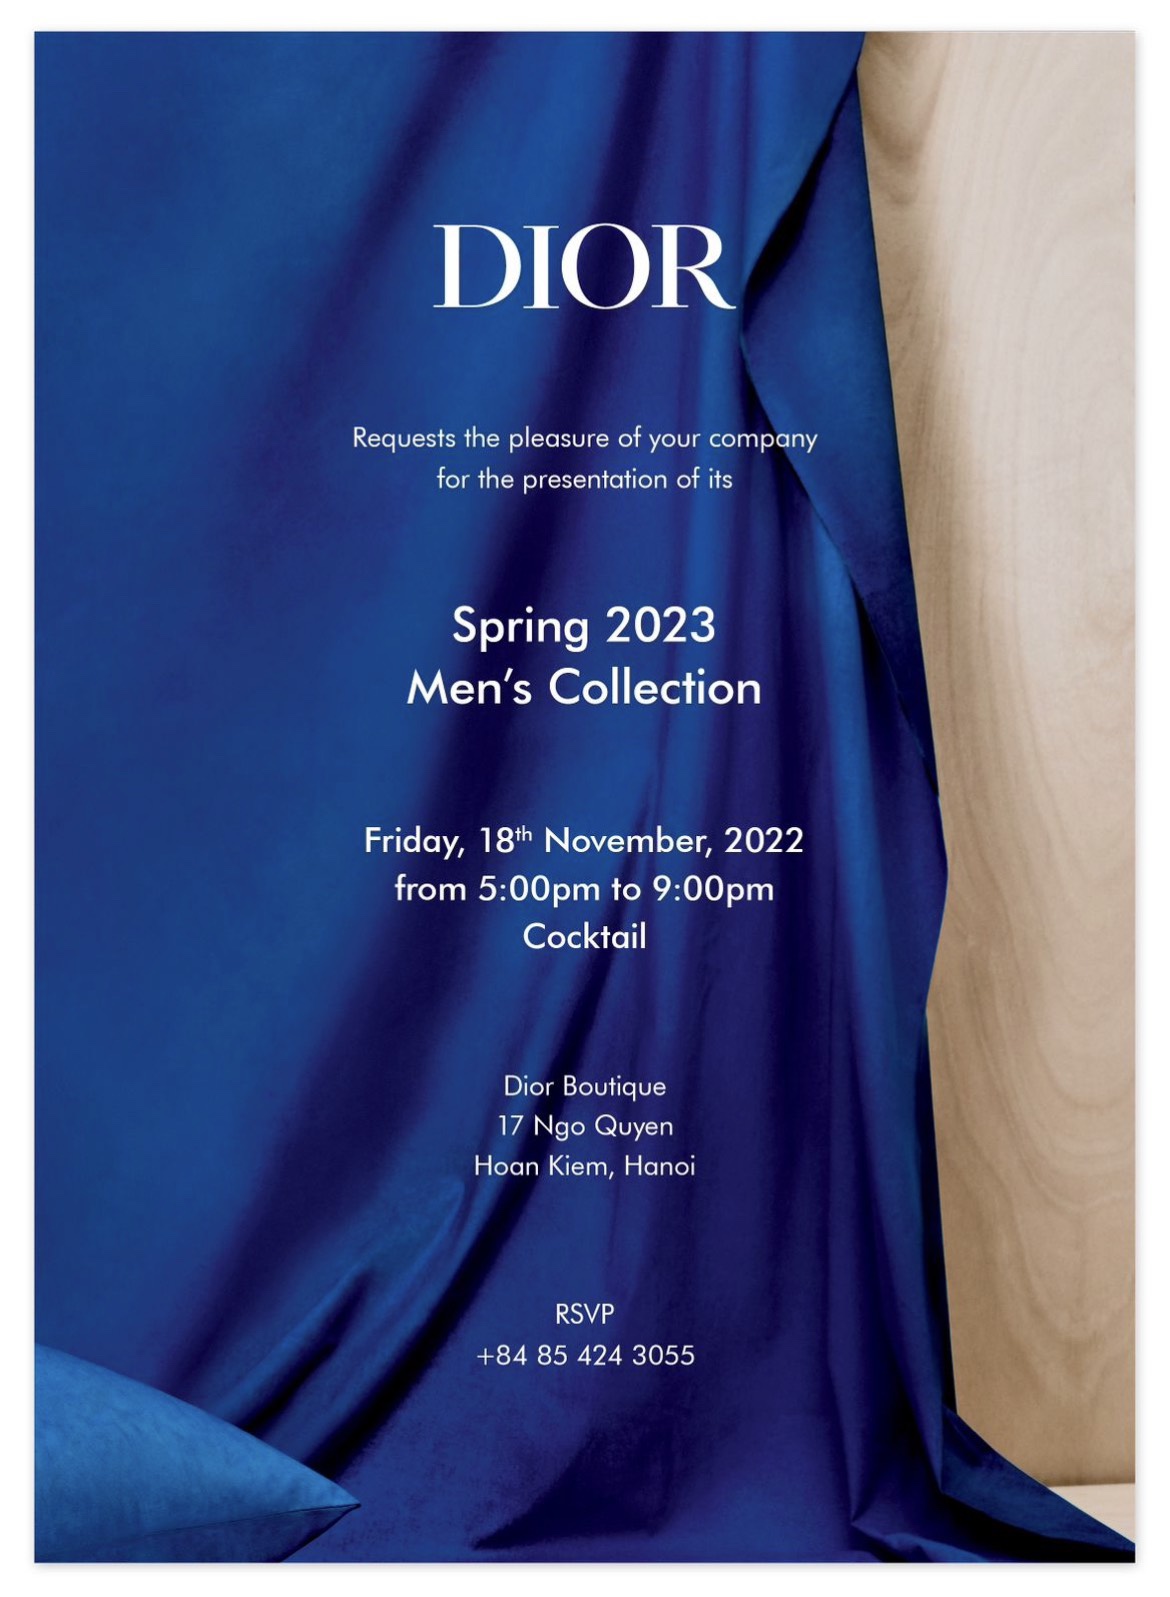 Christian Dior Cruise 2023 Một Seville lãng mạn dưới tay nghề thủ công của  những người người nghệ nhân tài hoa  StyleRepublikcom  Thời Trang sáng  tạo và kinh doanh